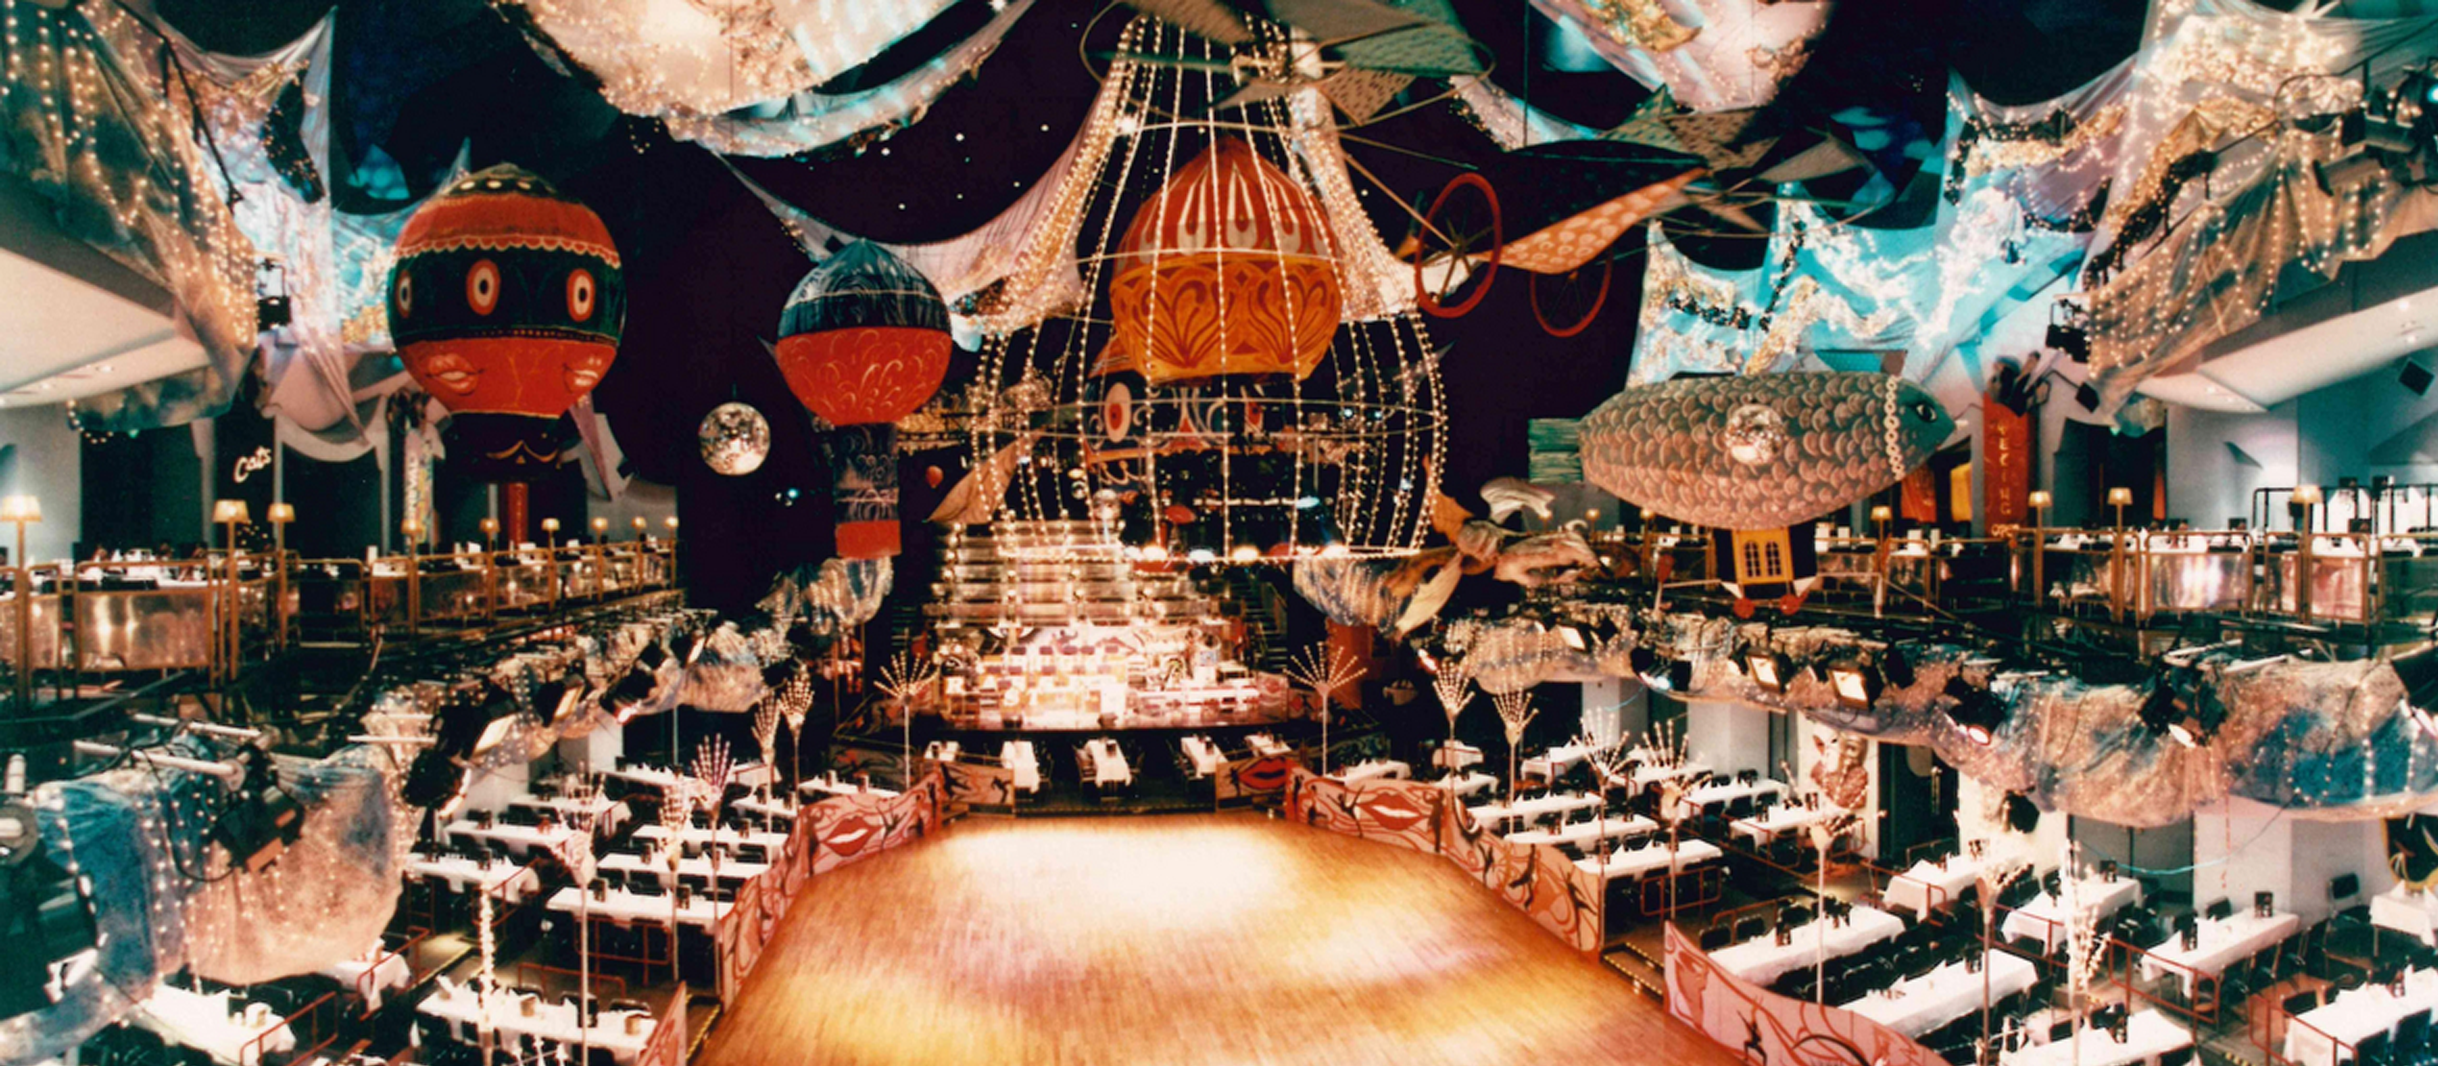 aufwendig dekorierter Theatersaal mit Ballons und weiß gedeckten Tischen